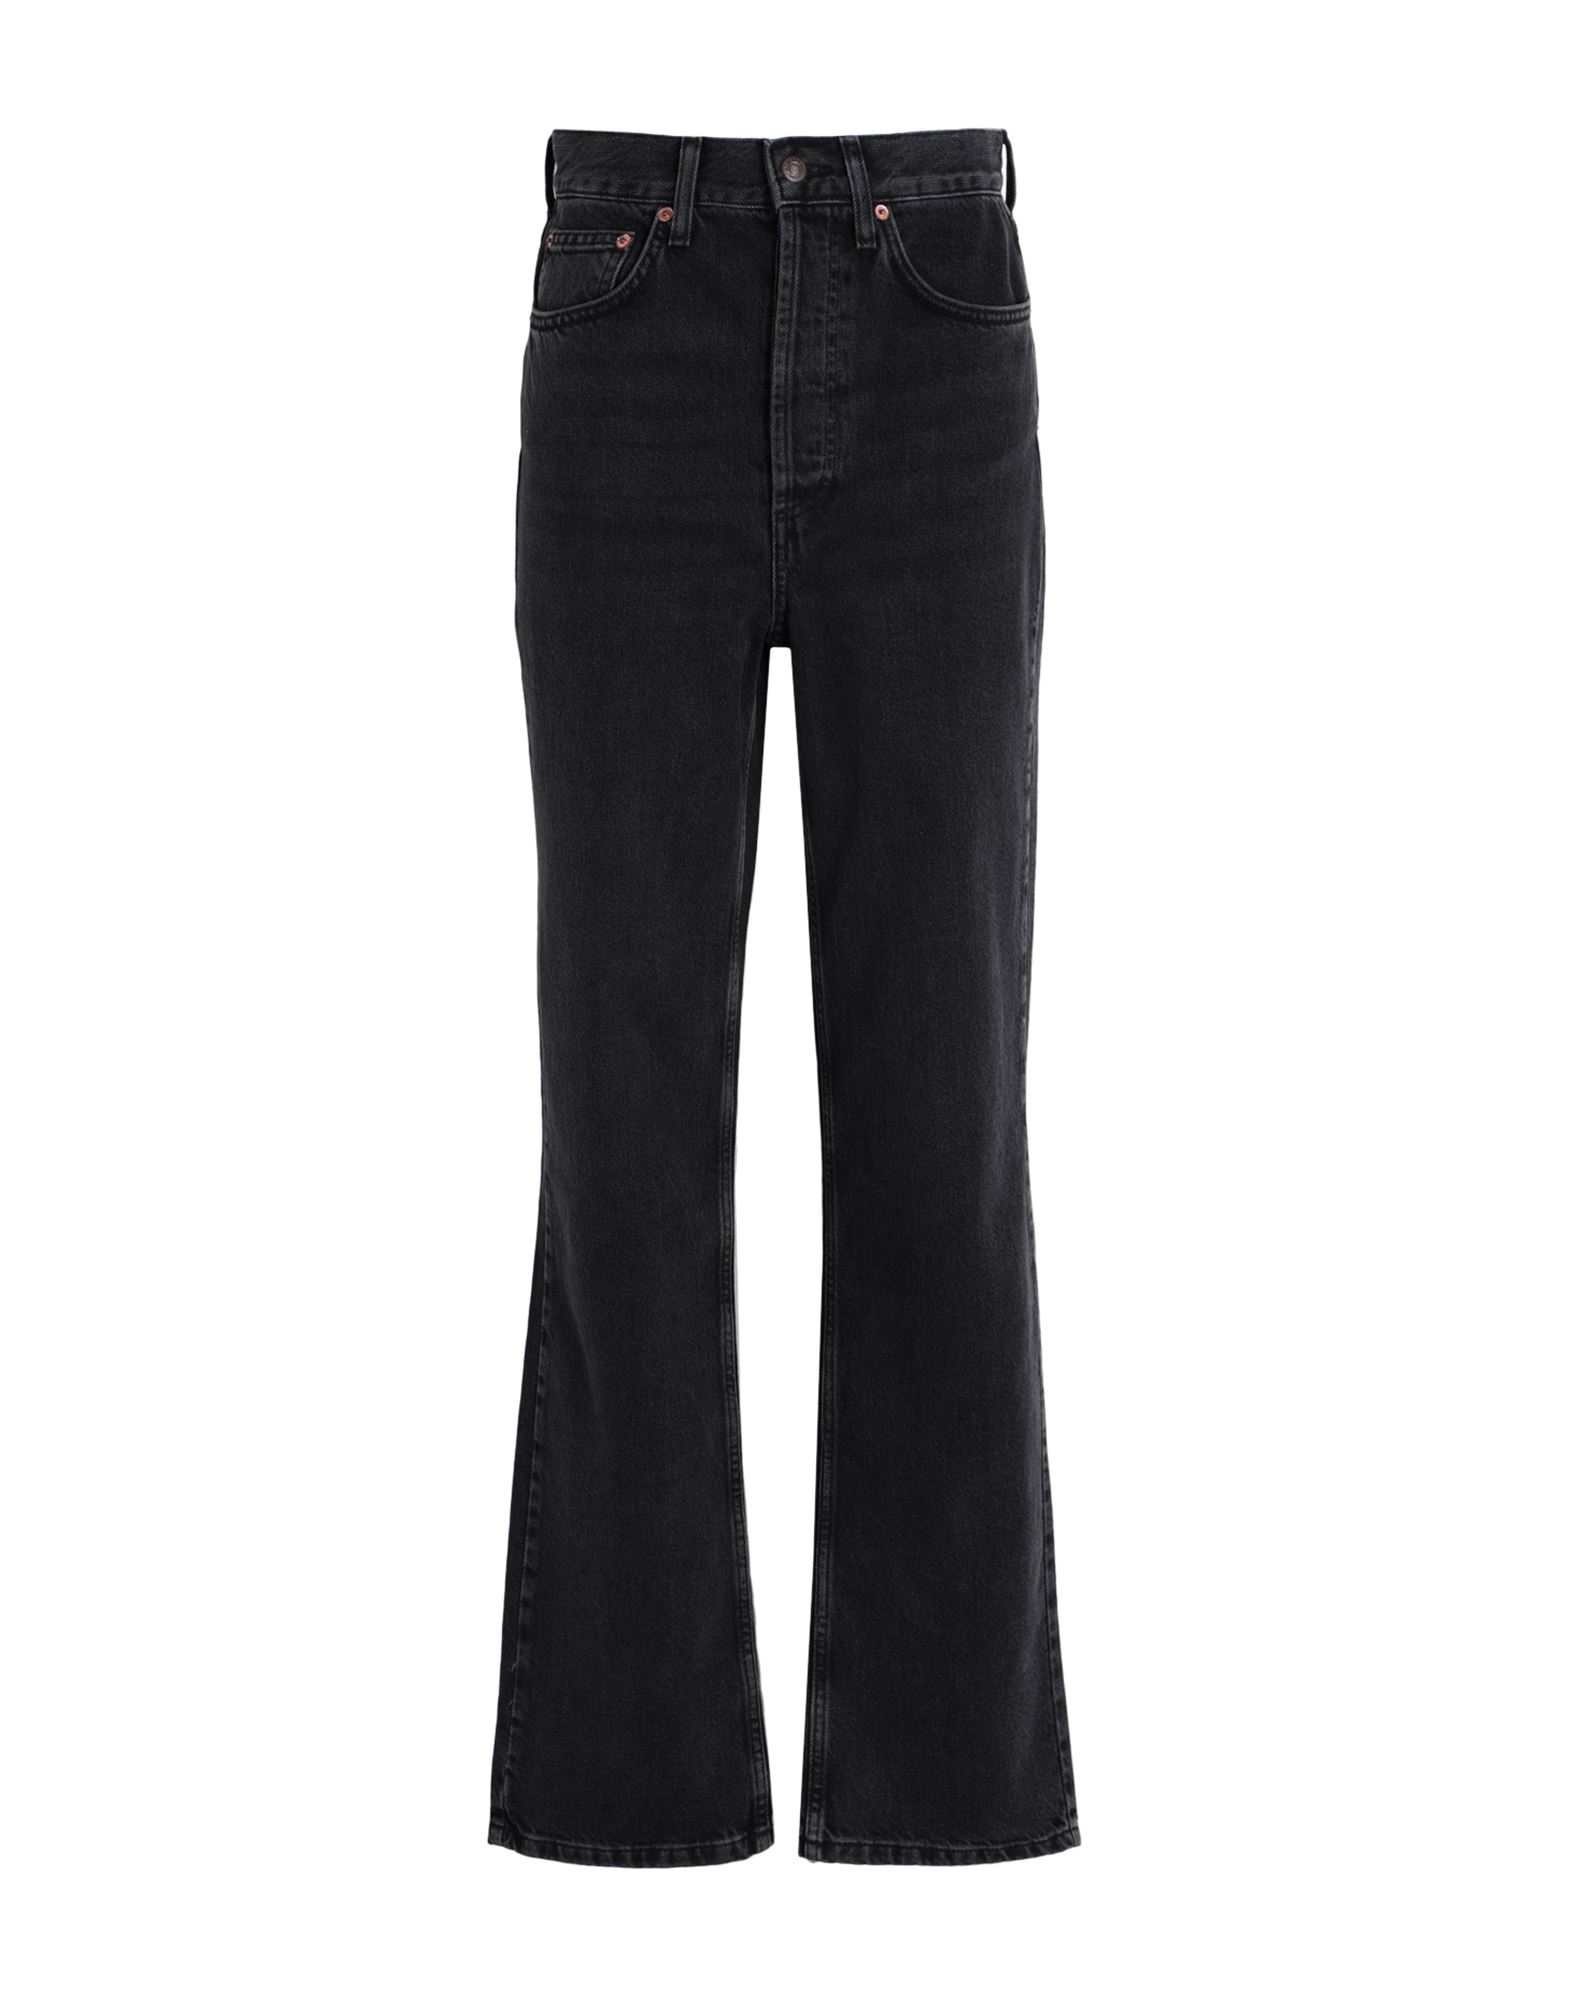 Shop Topshop Woman Jeans Black Size 26w-34l Cotton